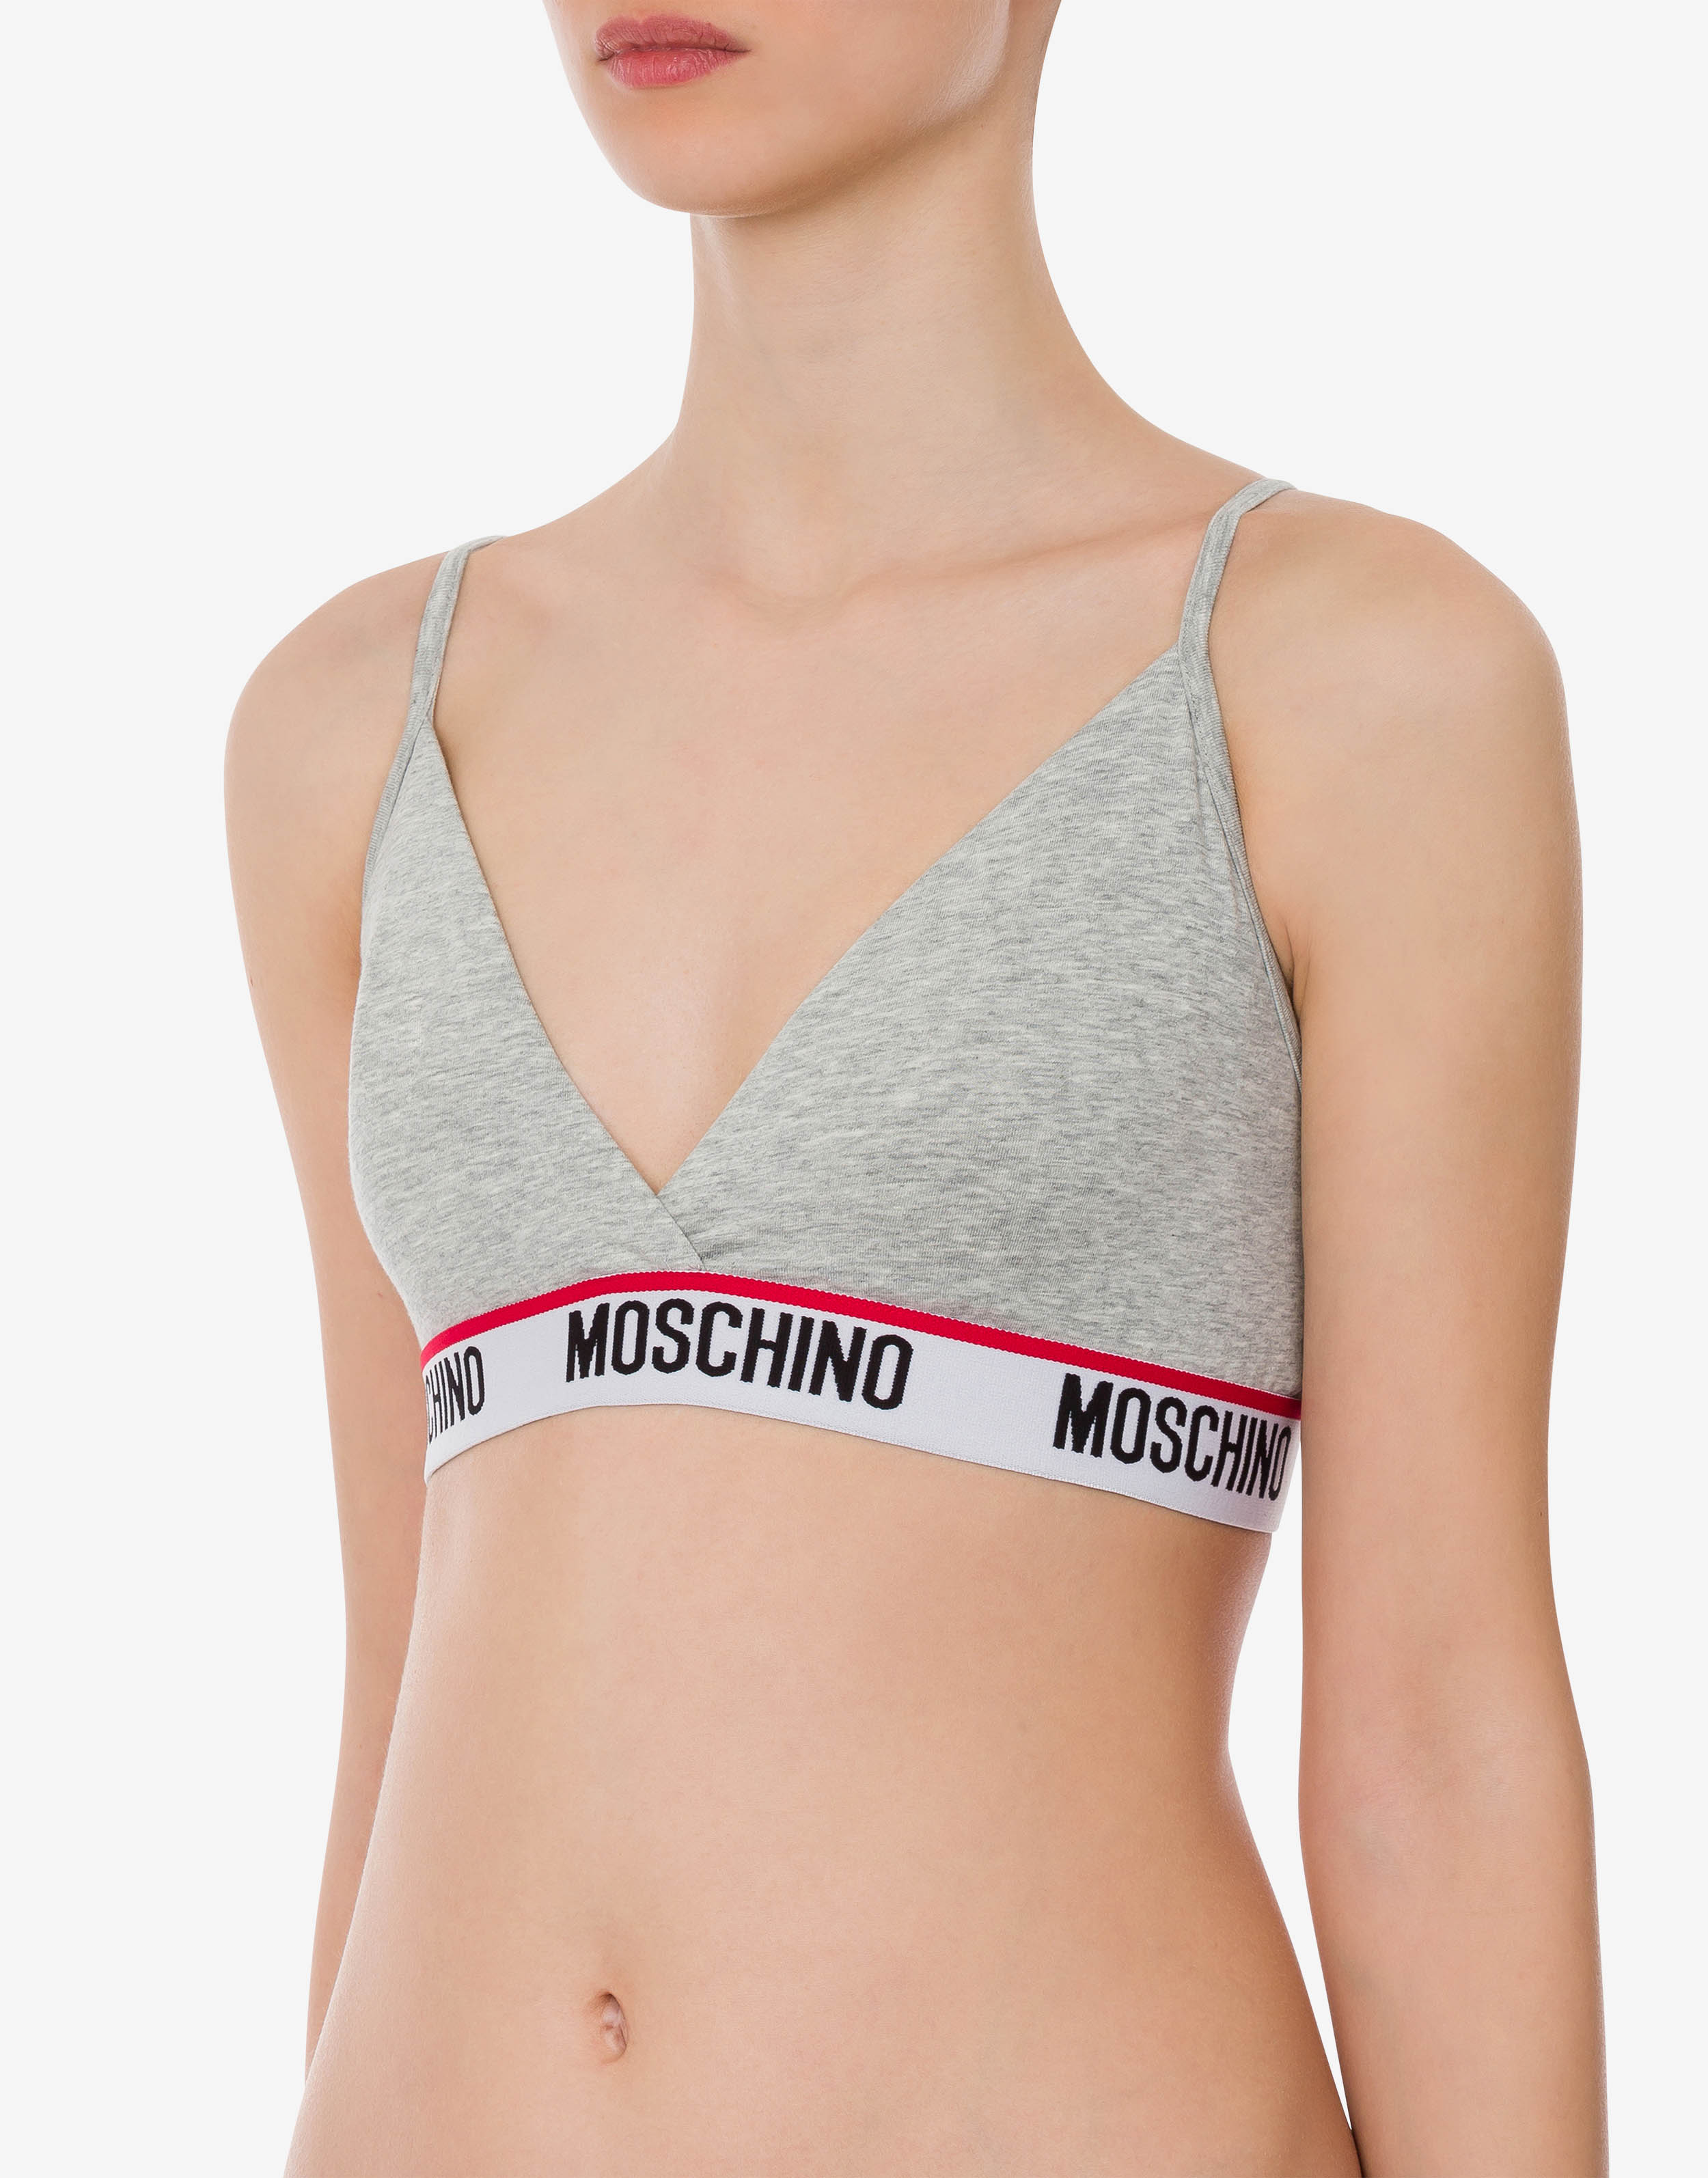 MOSCHINO, Grey Women's Bra